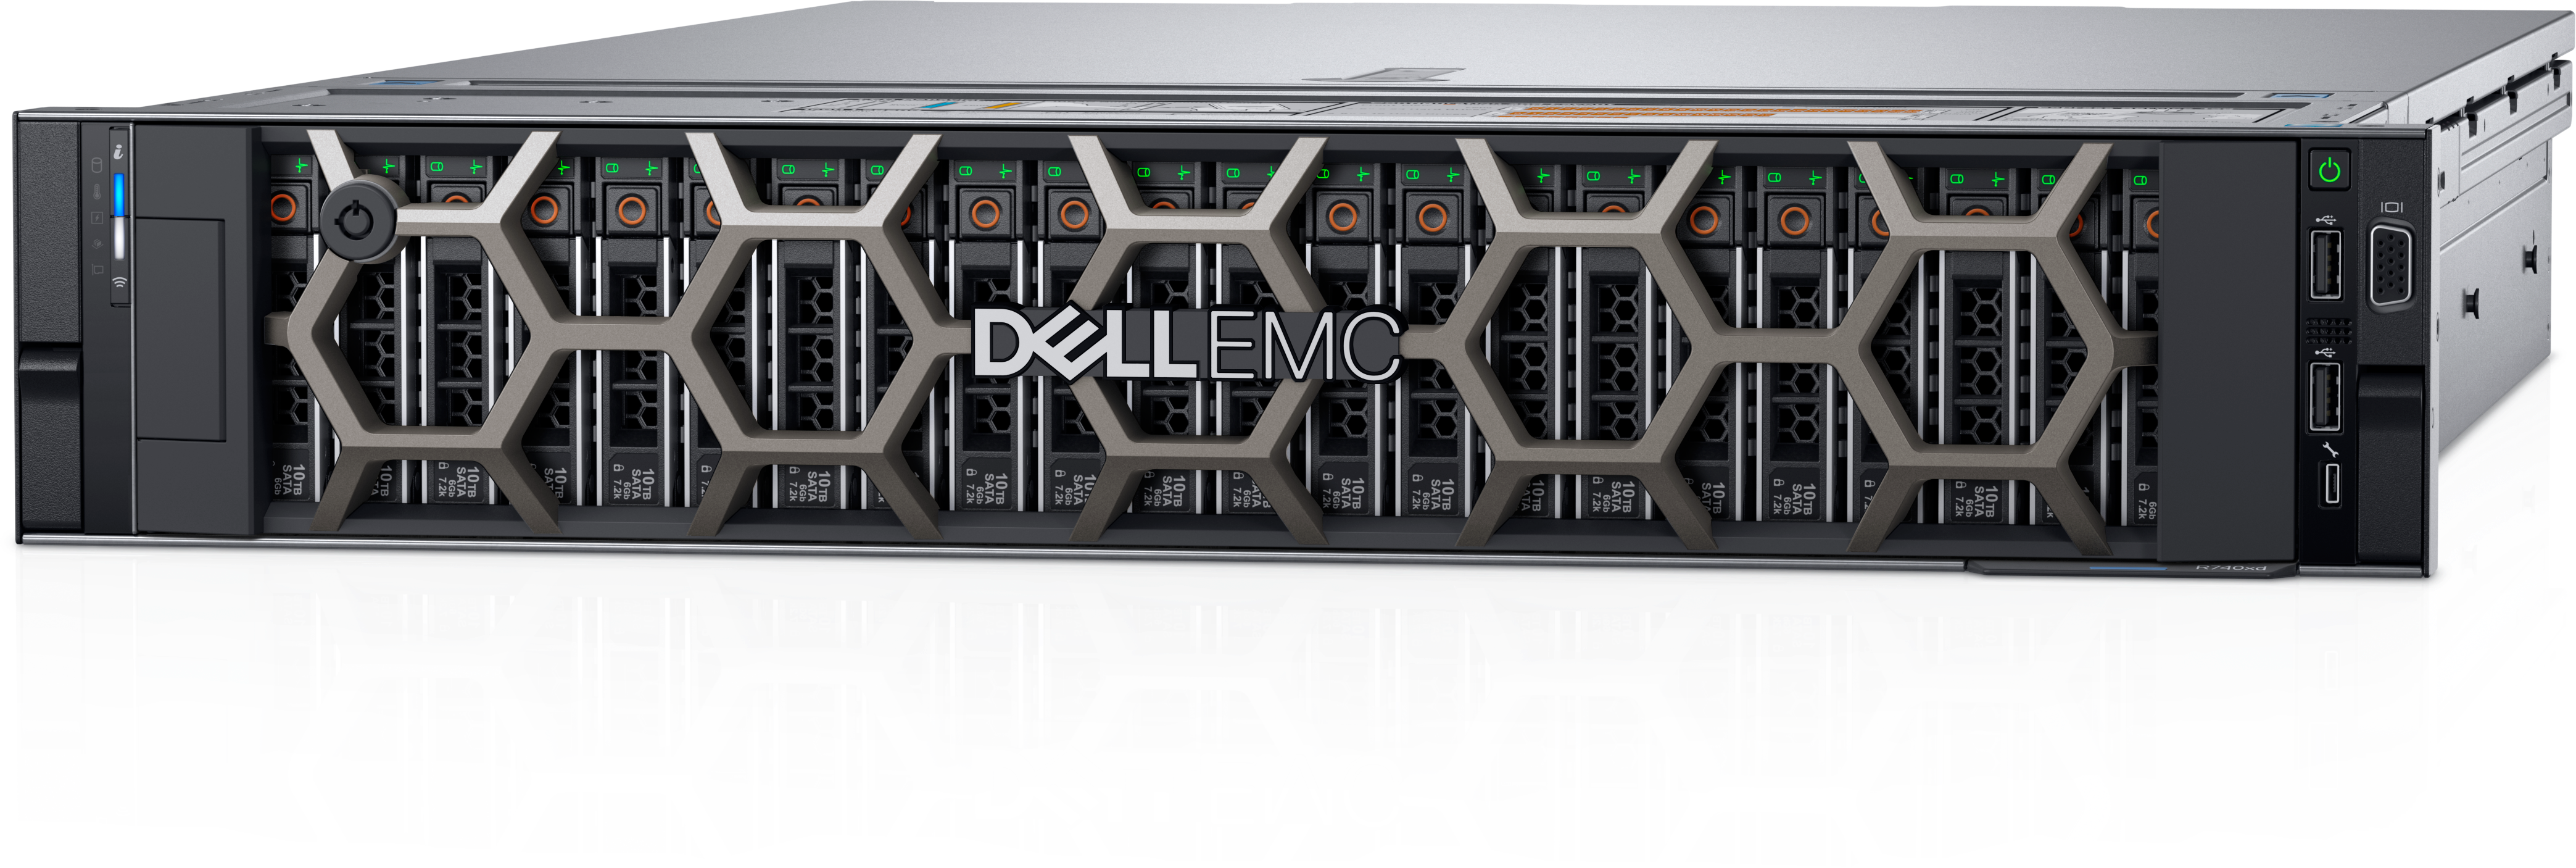 PowerEdge R740xd Rack Server | Dell UK